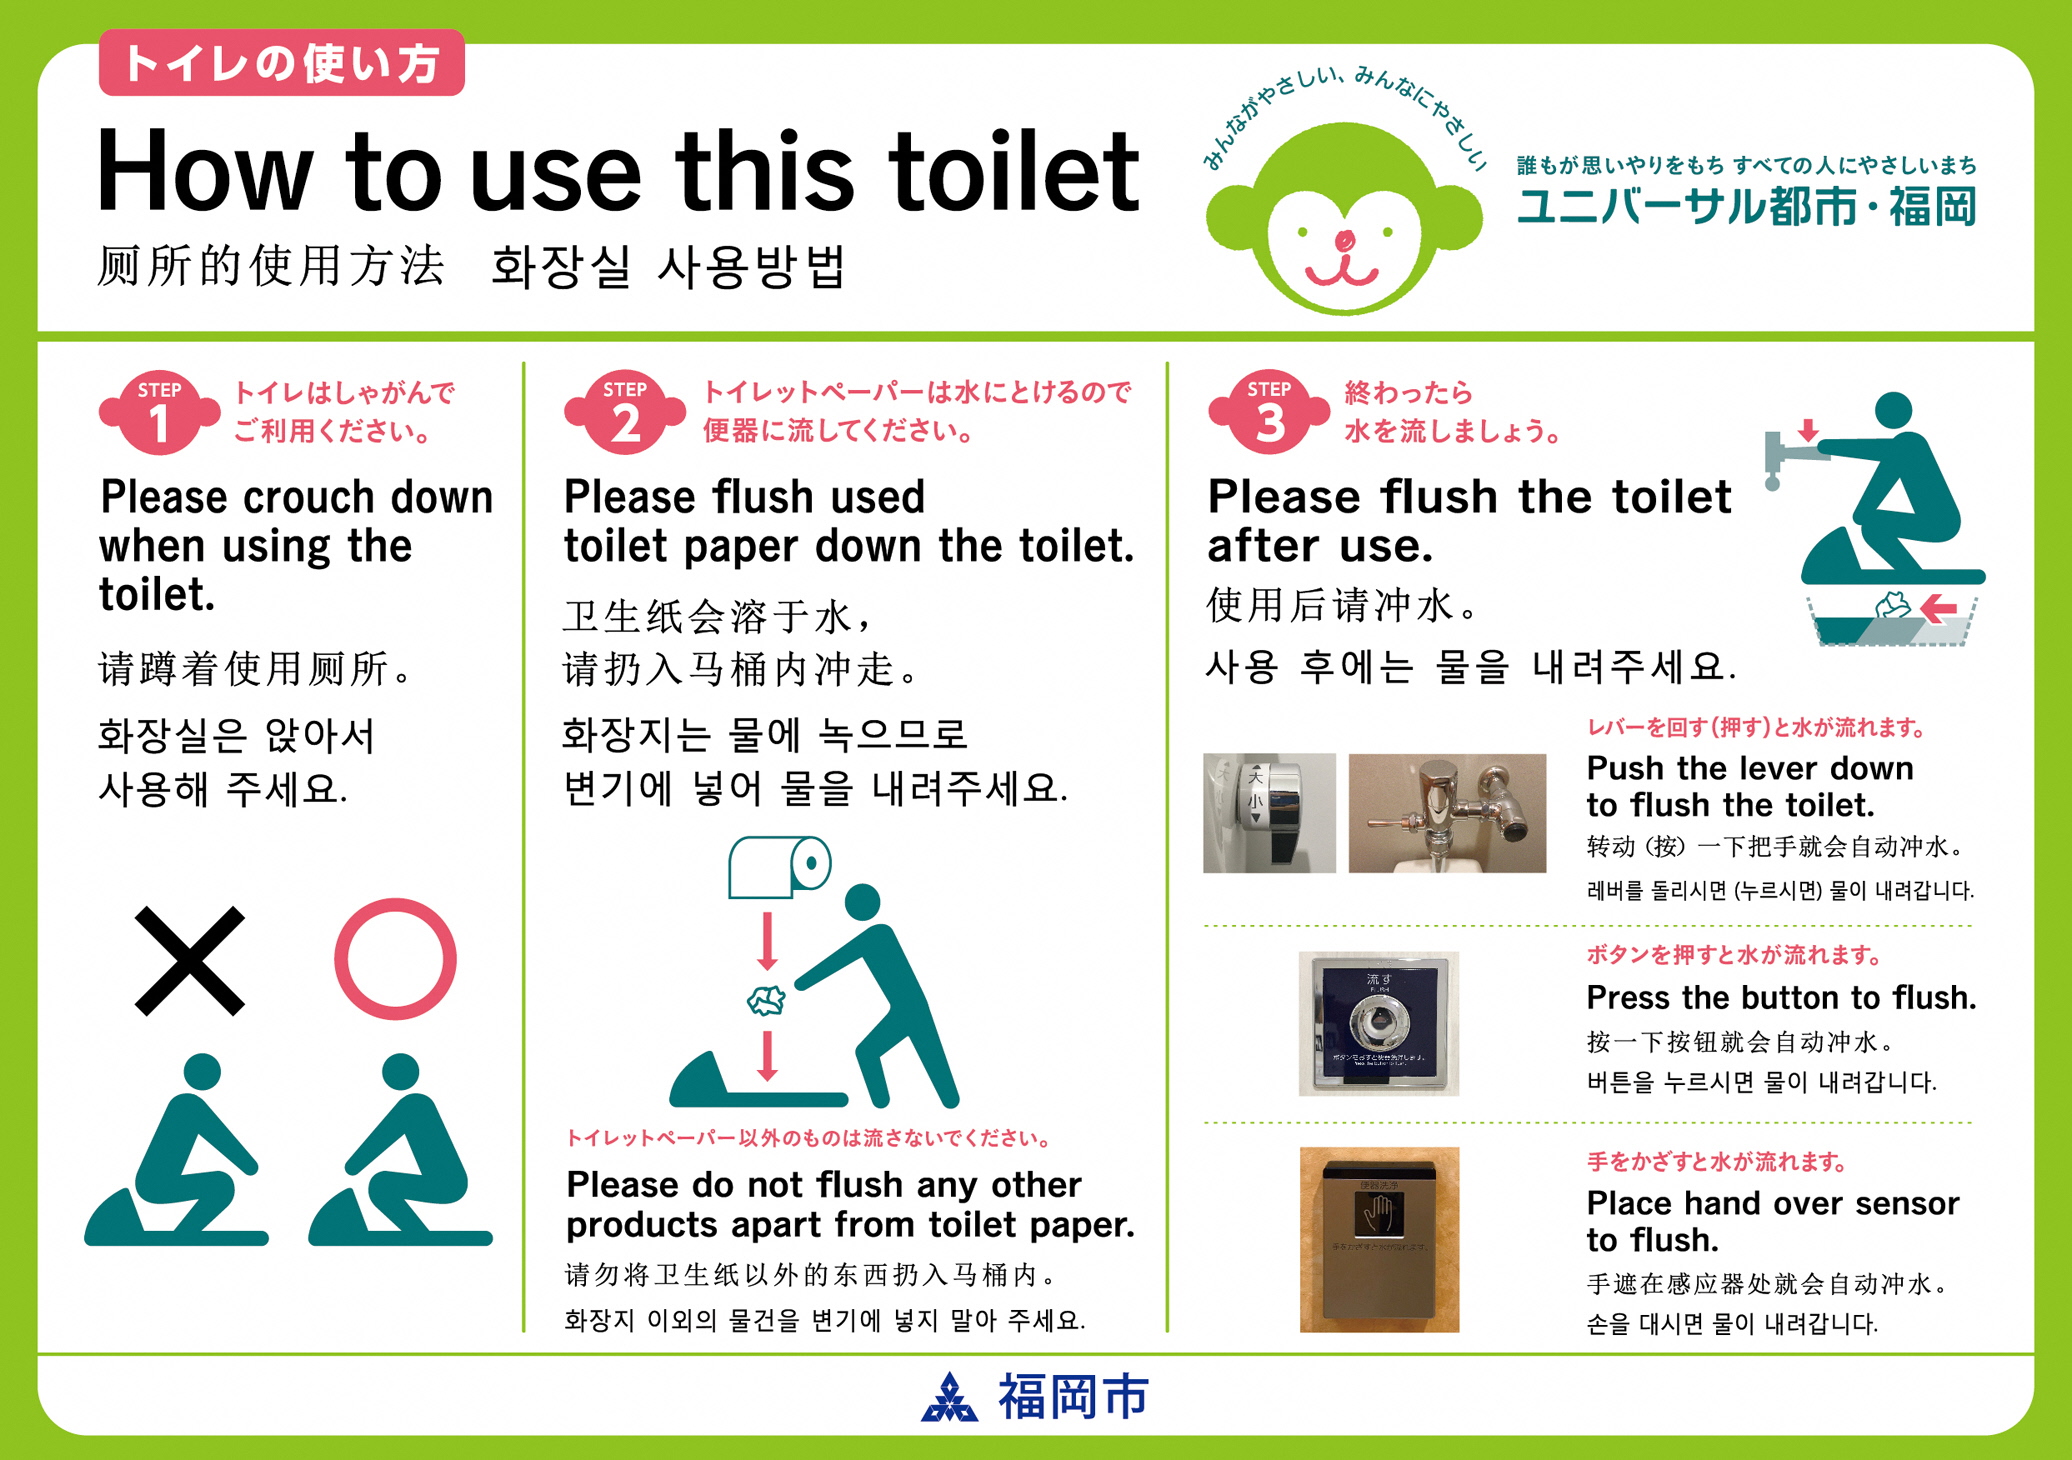 福岡市 「ユニバーサル都市・福岡」トイレの利用マナー啓発ステッカーについて